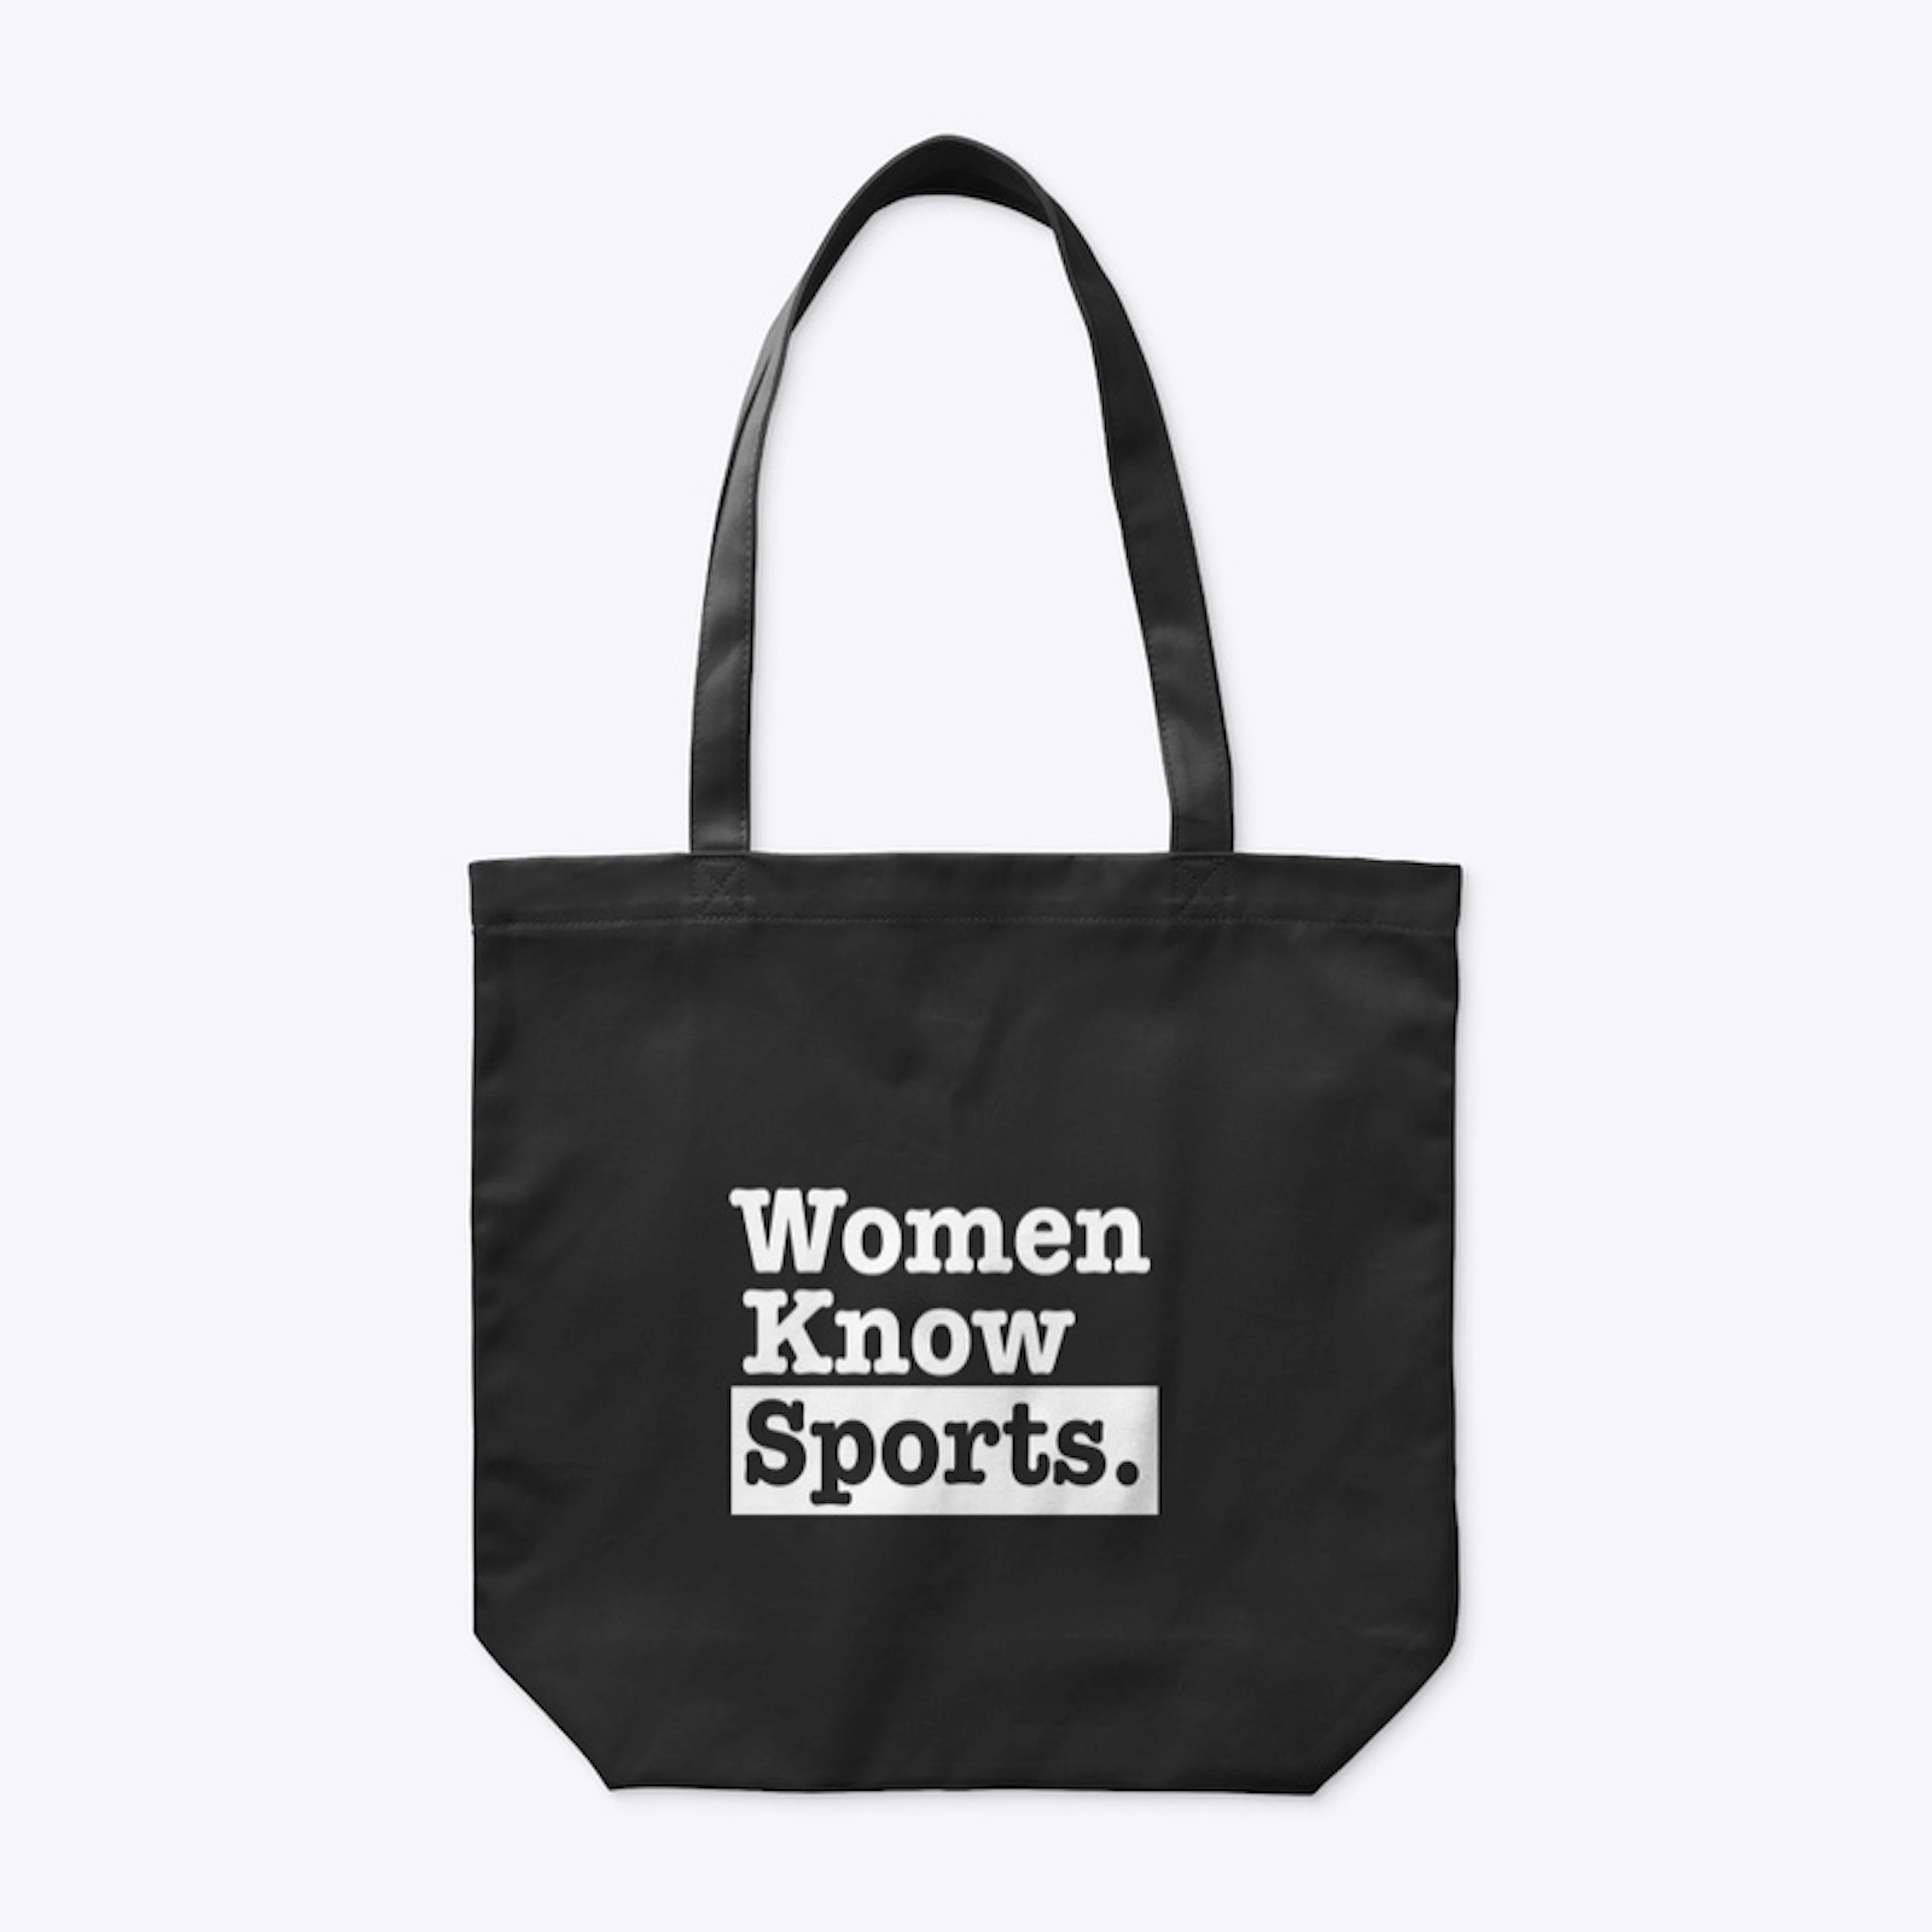 Women Know Sports.